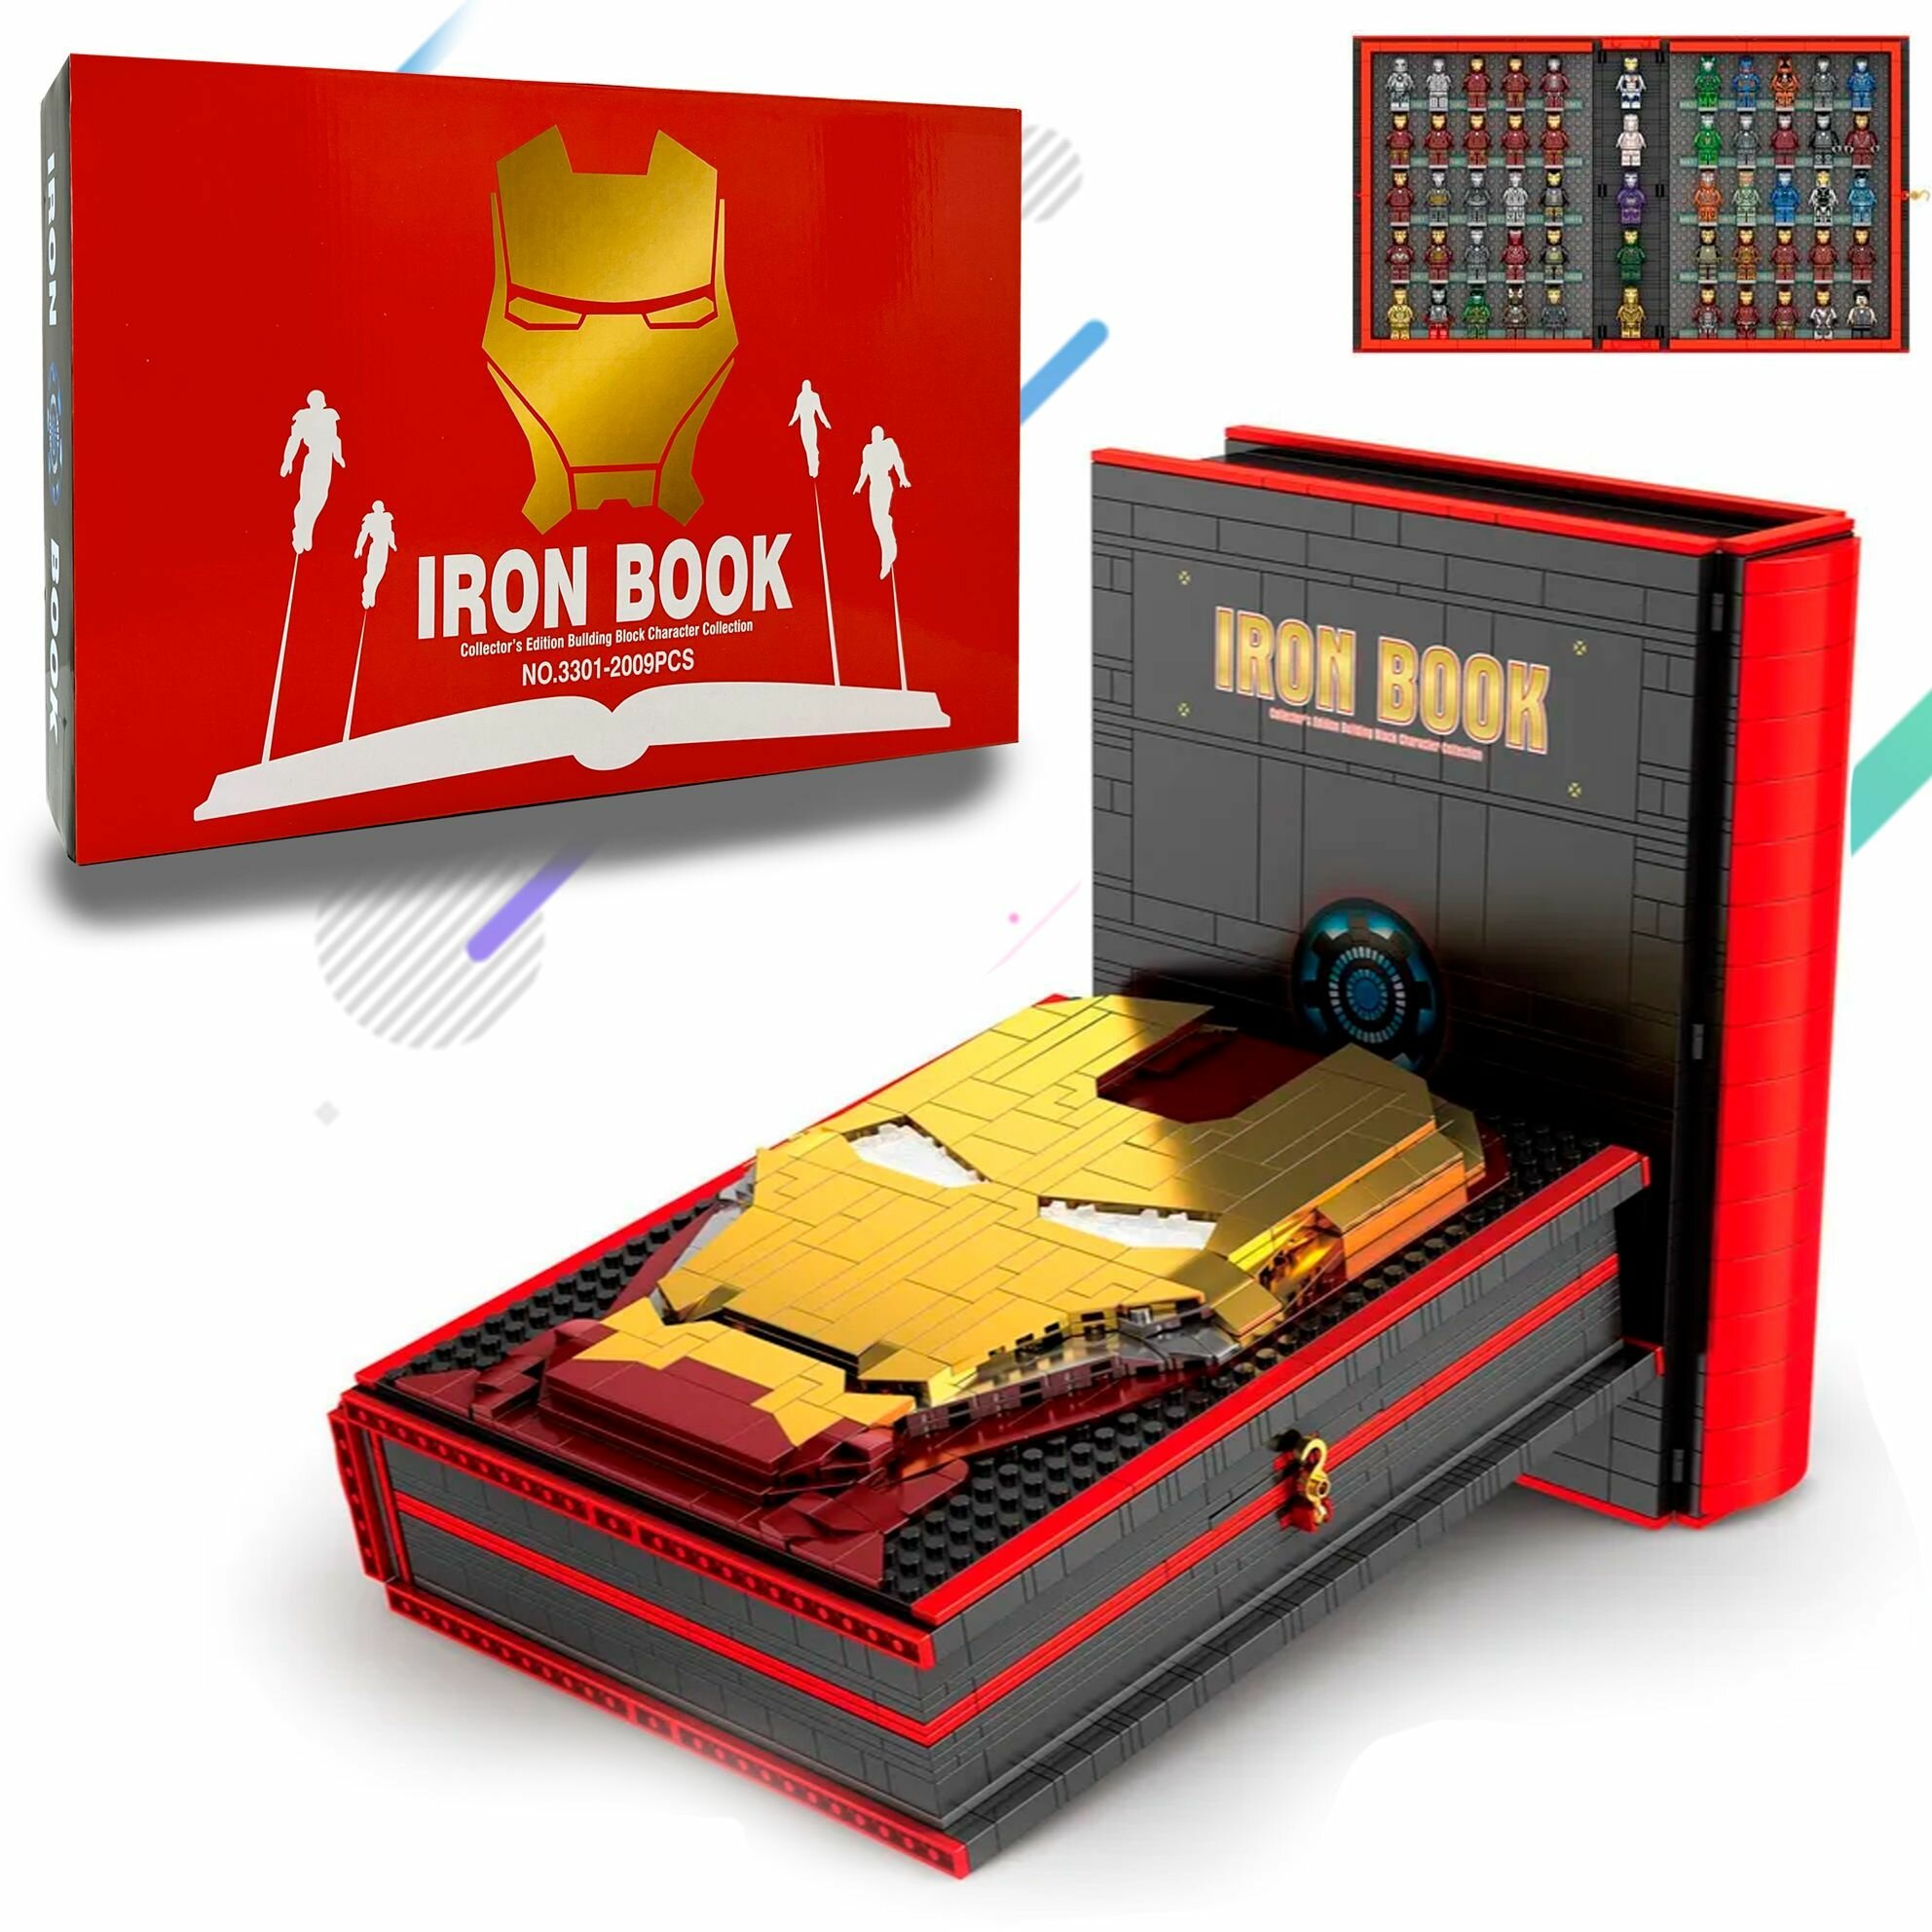 Конструктор Iron Book Книга Железного Человека NO.3301 Набор 2009 детали Подарочный набор для детей взрослых мальчиков и девочек